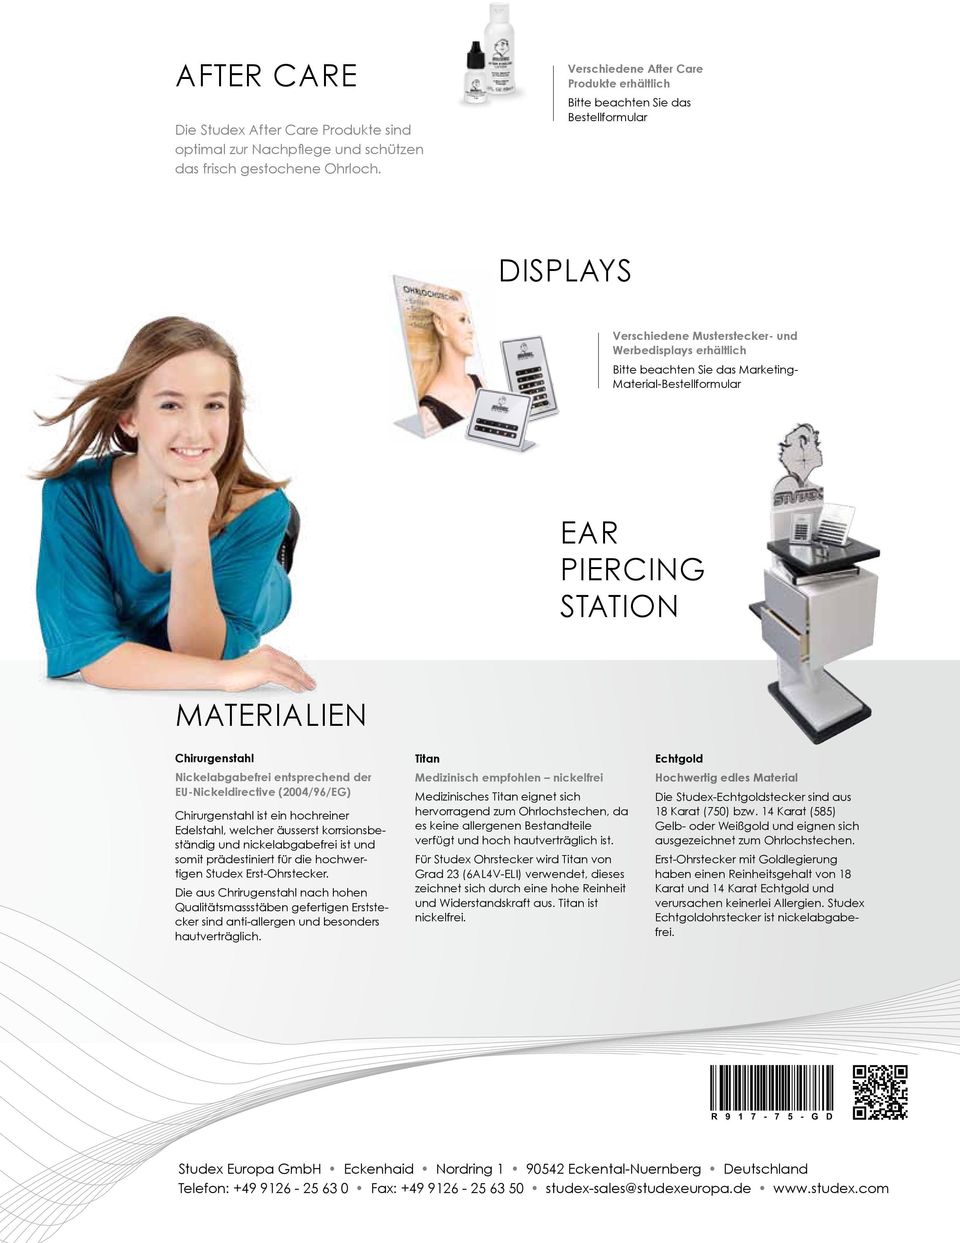 Material-Bestellformular EAR Piercing Station Materialien Chirurgenstahl Nickelabgabefrei entsprechend der EU-Nickeldirective (2004/96/EG) Chirurgenstahl ist ein hochreiner Edelstahl, welcher